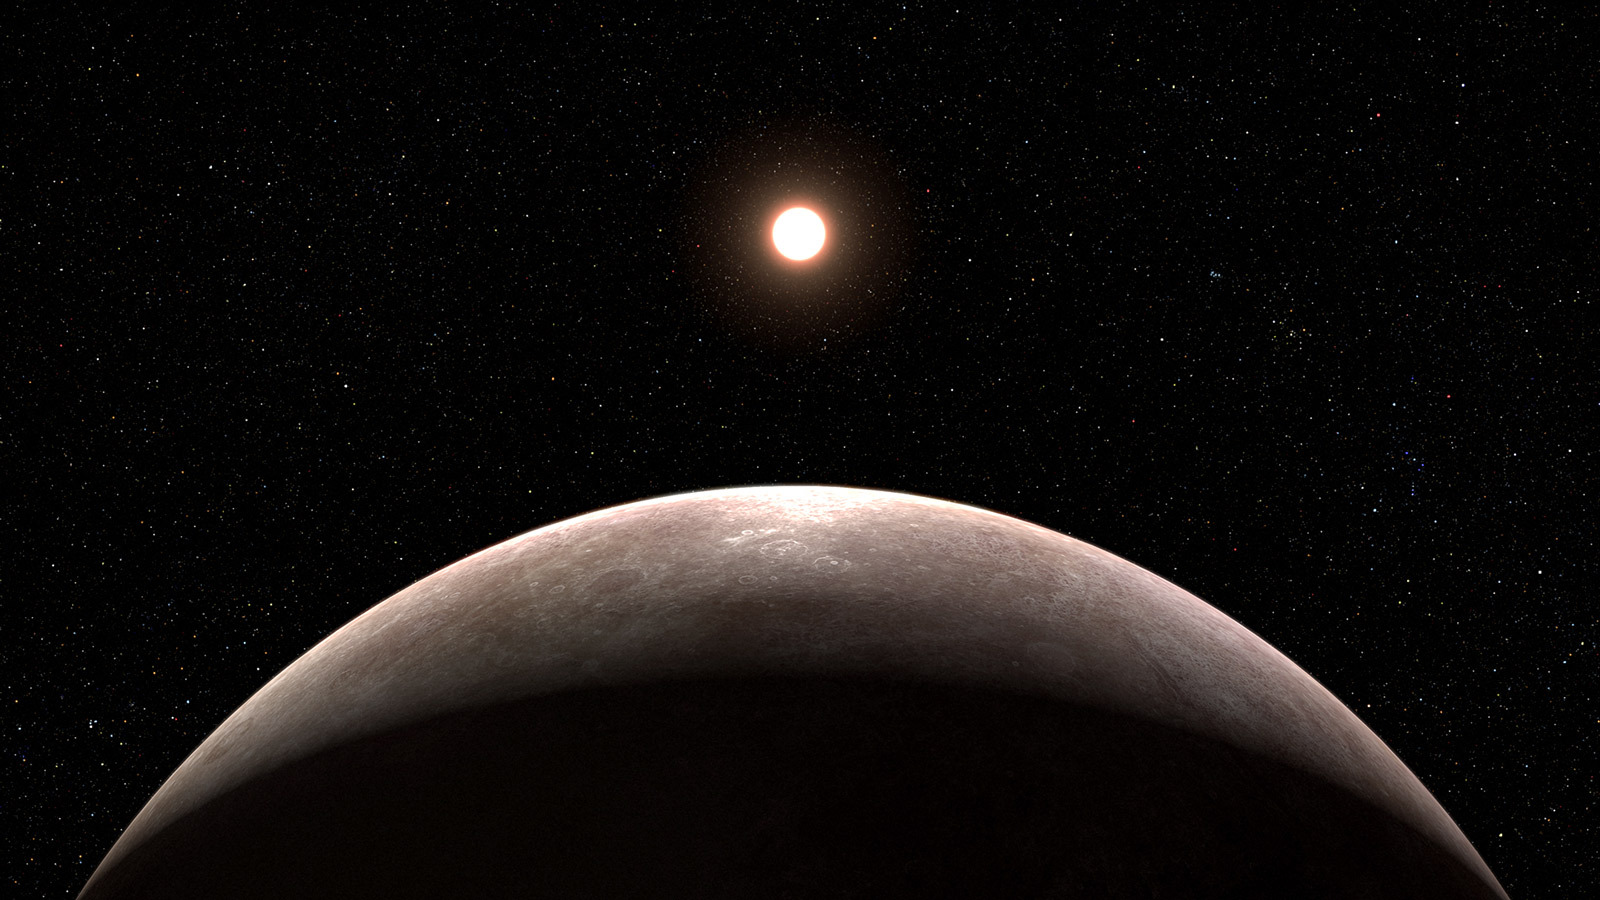 韦伯太空望远镜首次观测到一颗系外行星LHS 475 b